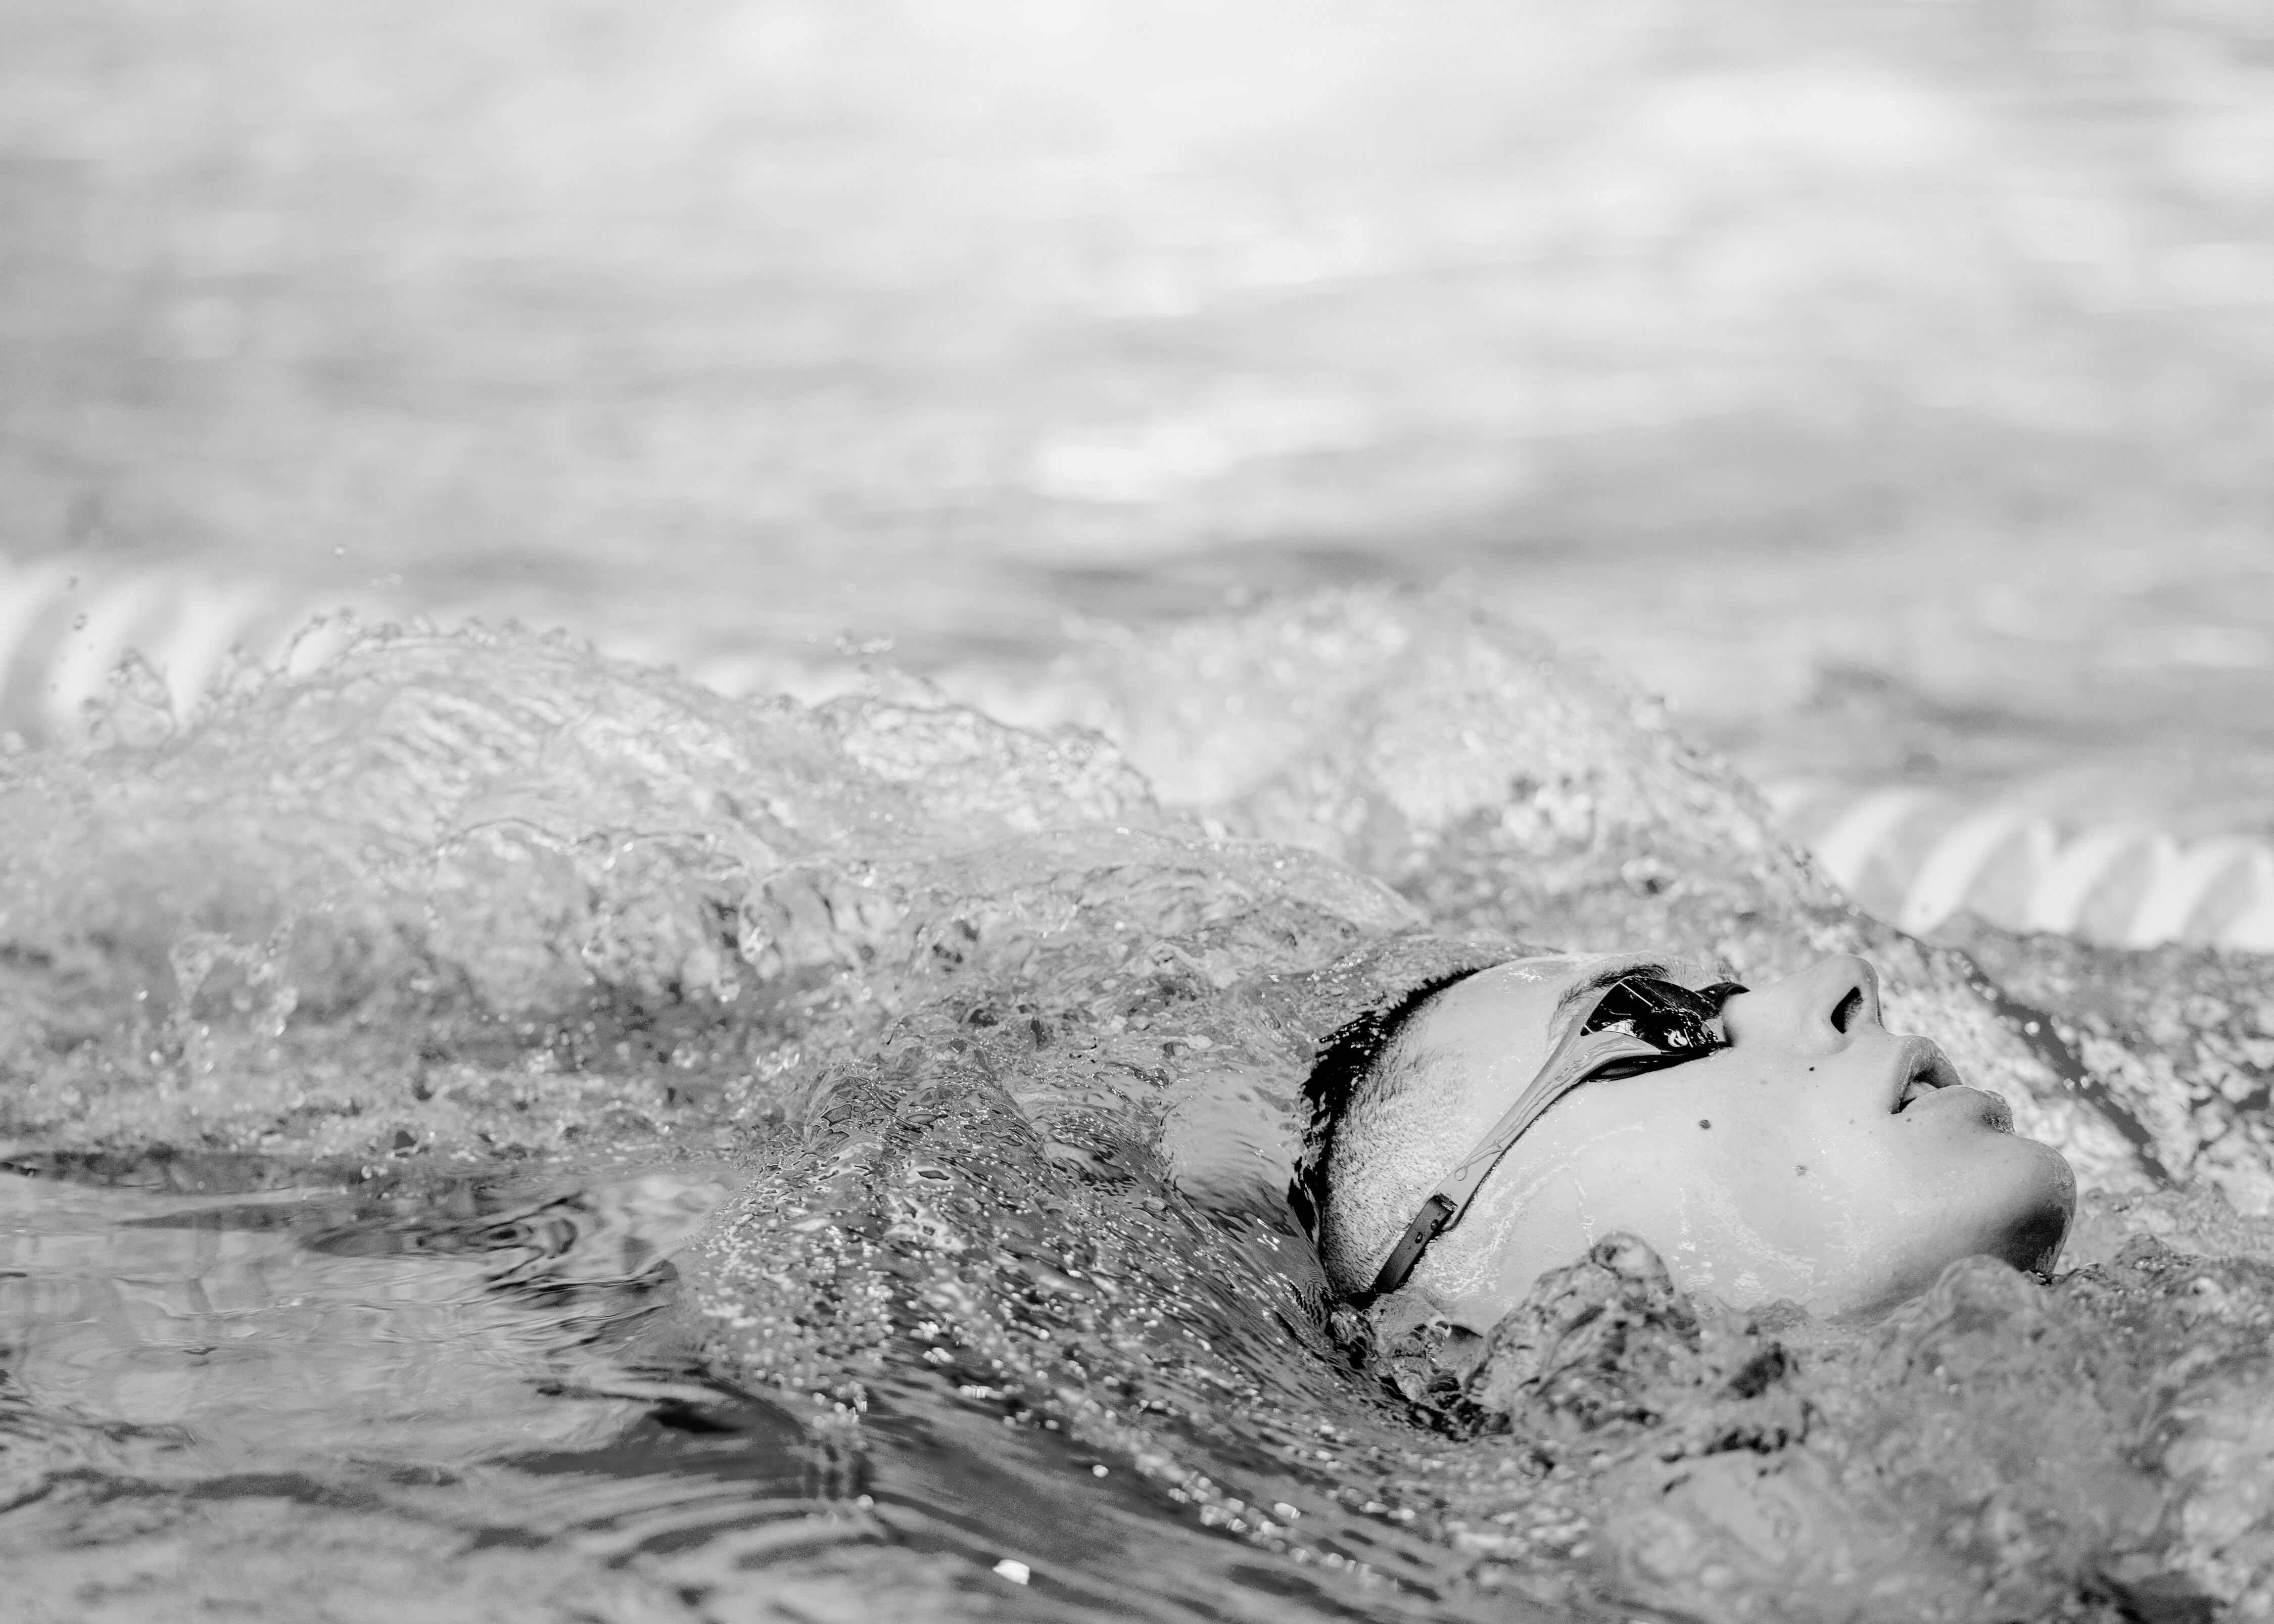 El nadador rumano, en pleno entrenamiento. Ni un gesto de fatiga, ni una mueca de estrés altera sus facciones mientras lleva su cuerpo al límite cada mañana.